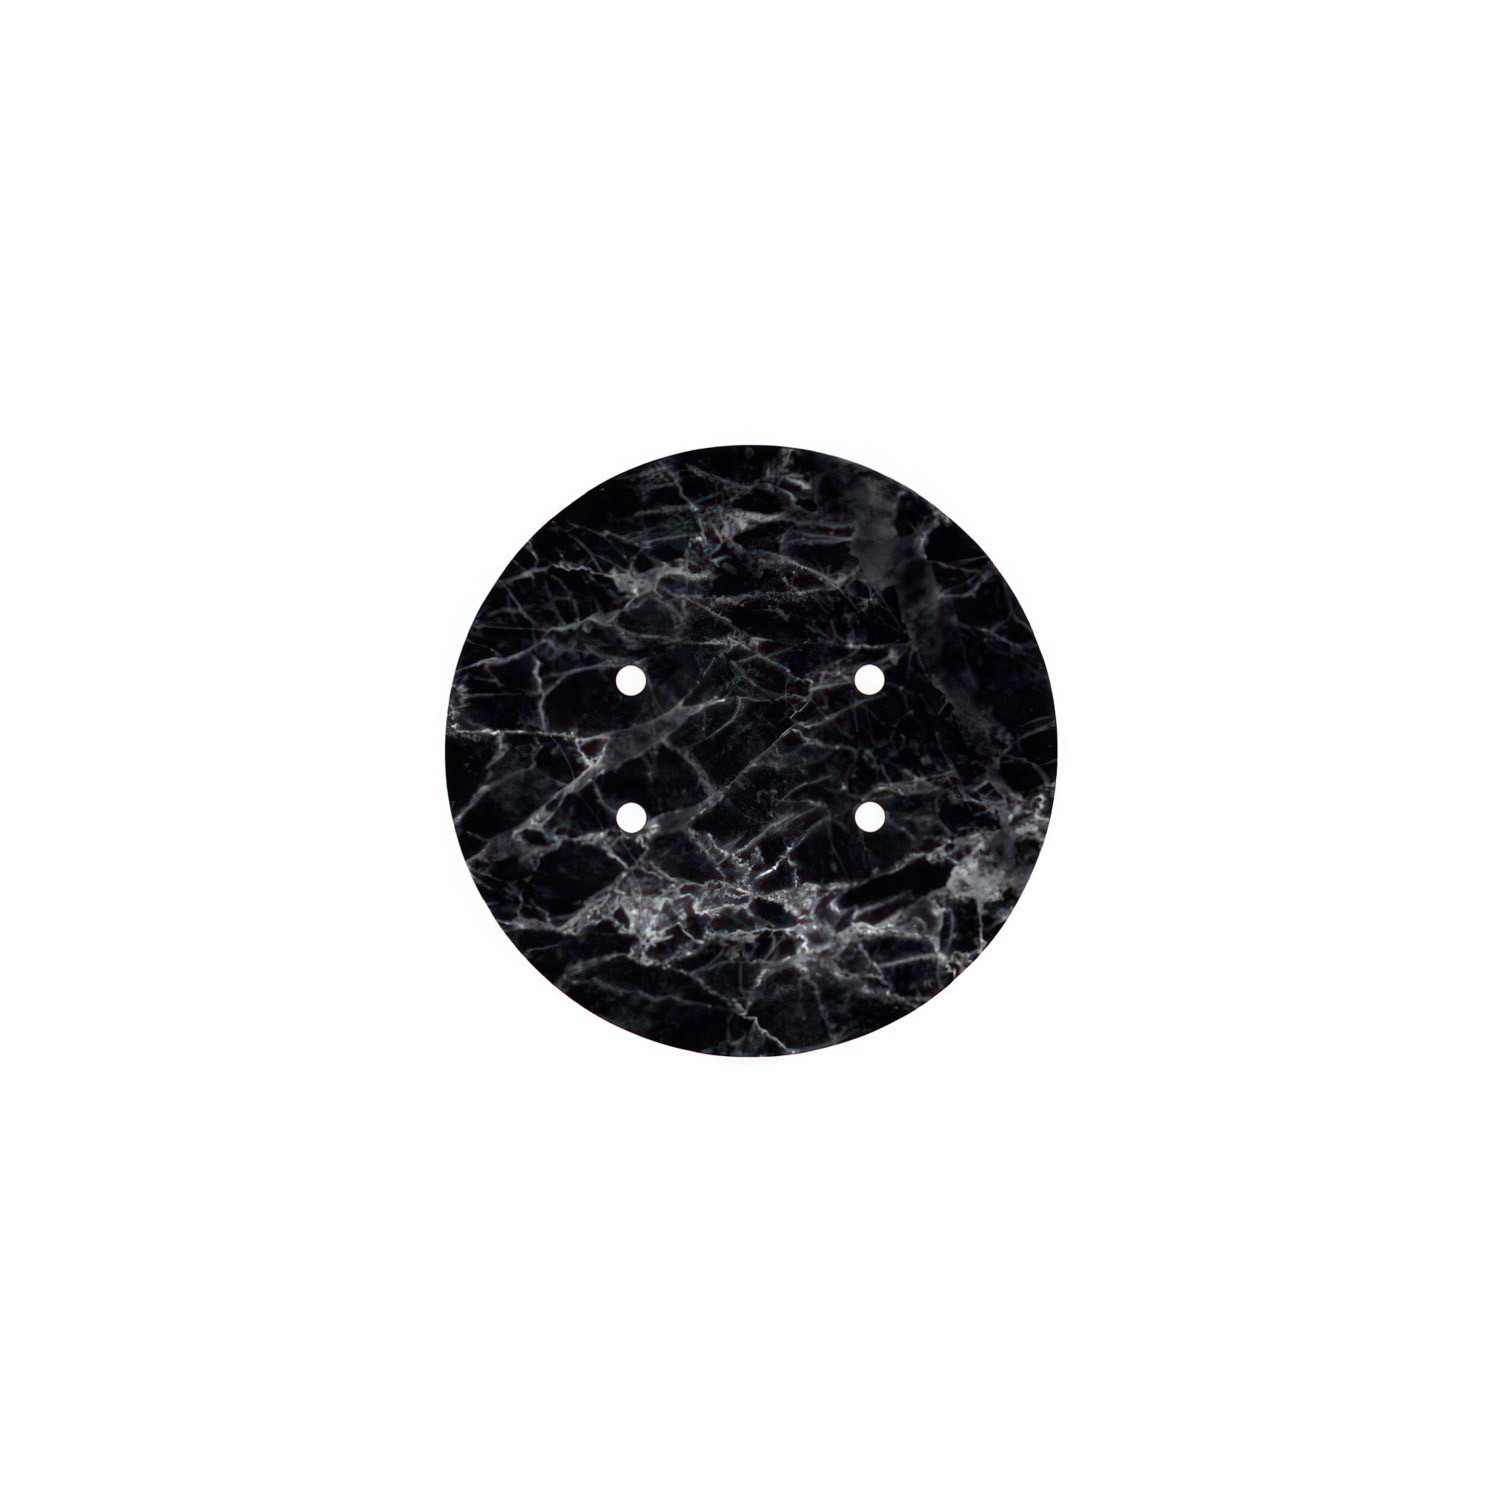 Rundes 4-Loch und 4 Seitenlöchern Lampenbaldachin, Rose-One-Abdeckung, 200 mm Durchmesser